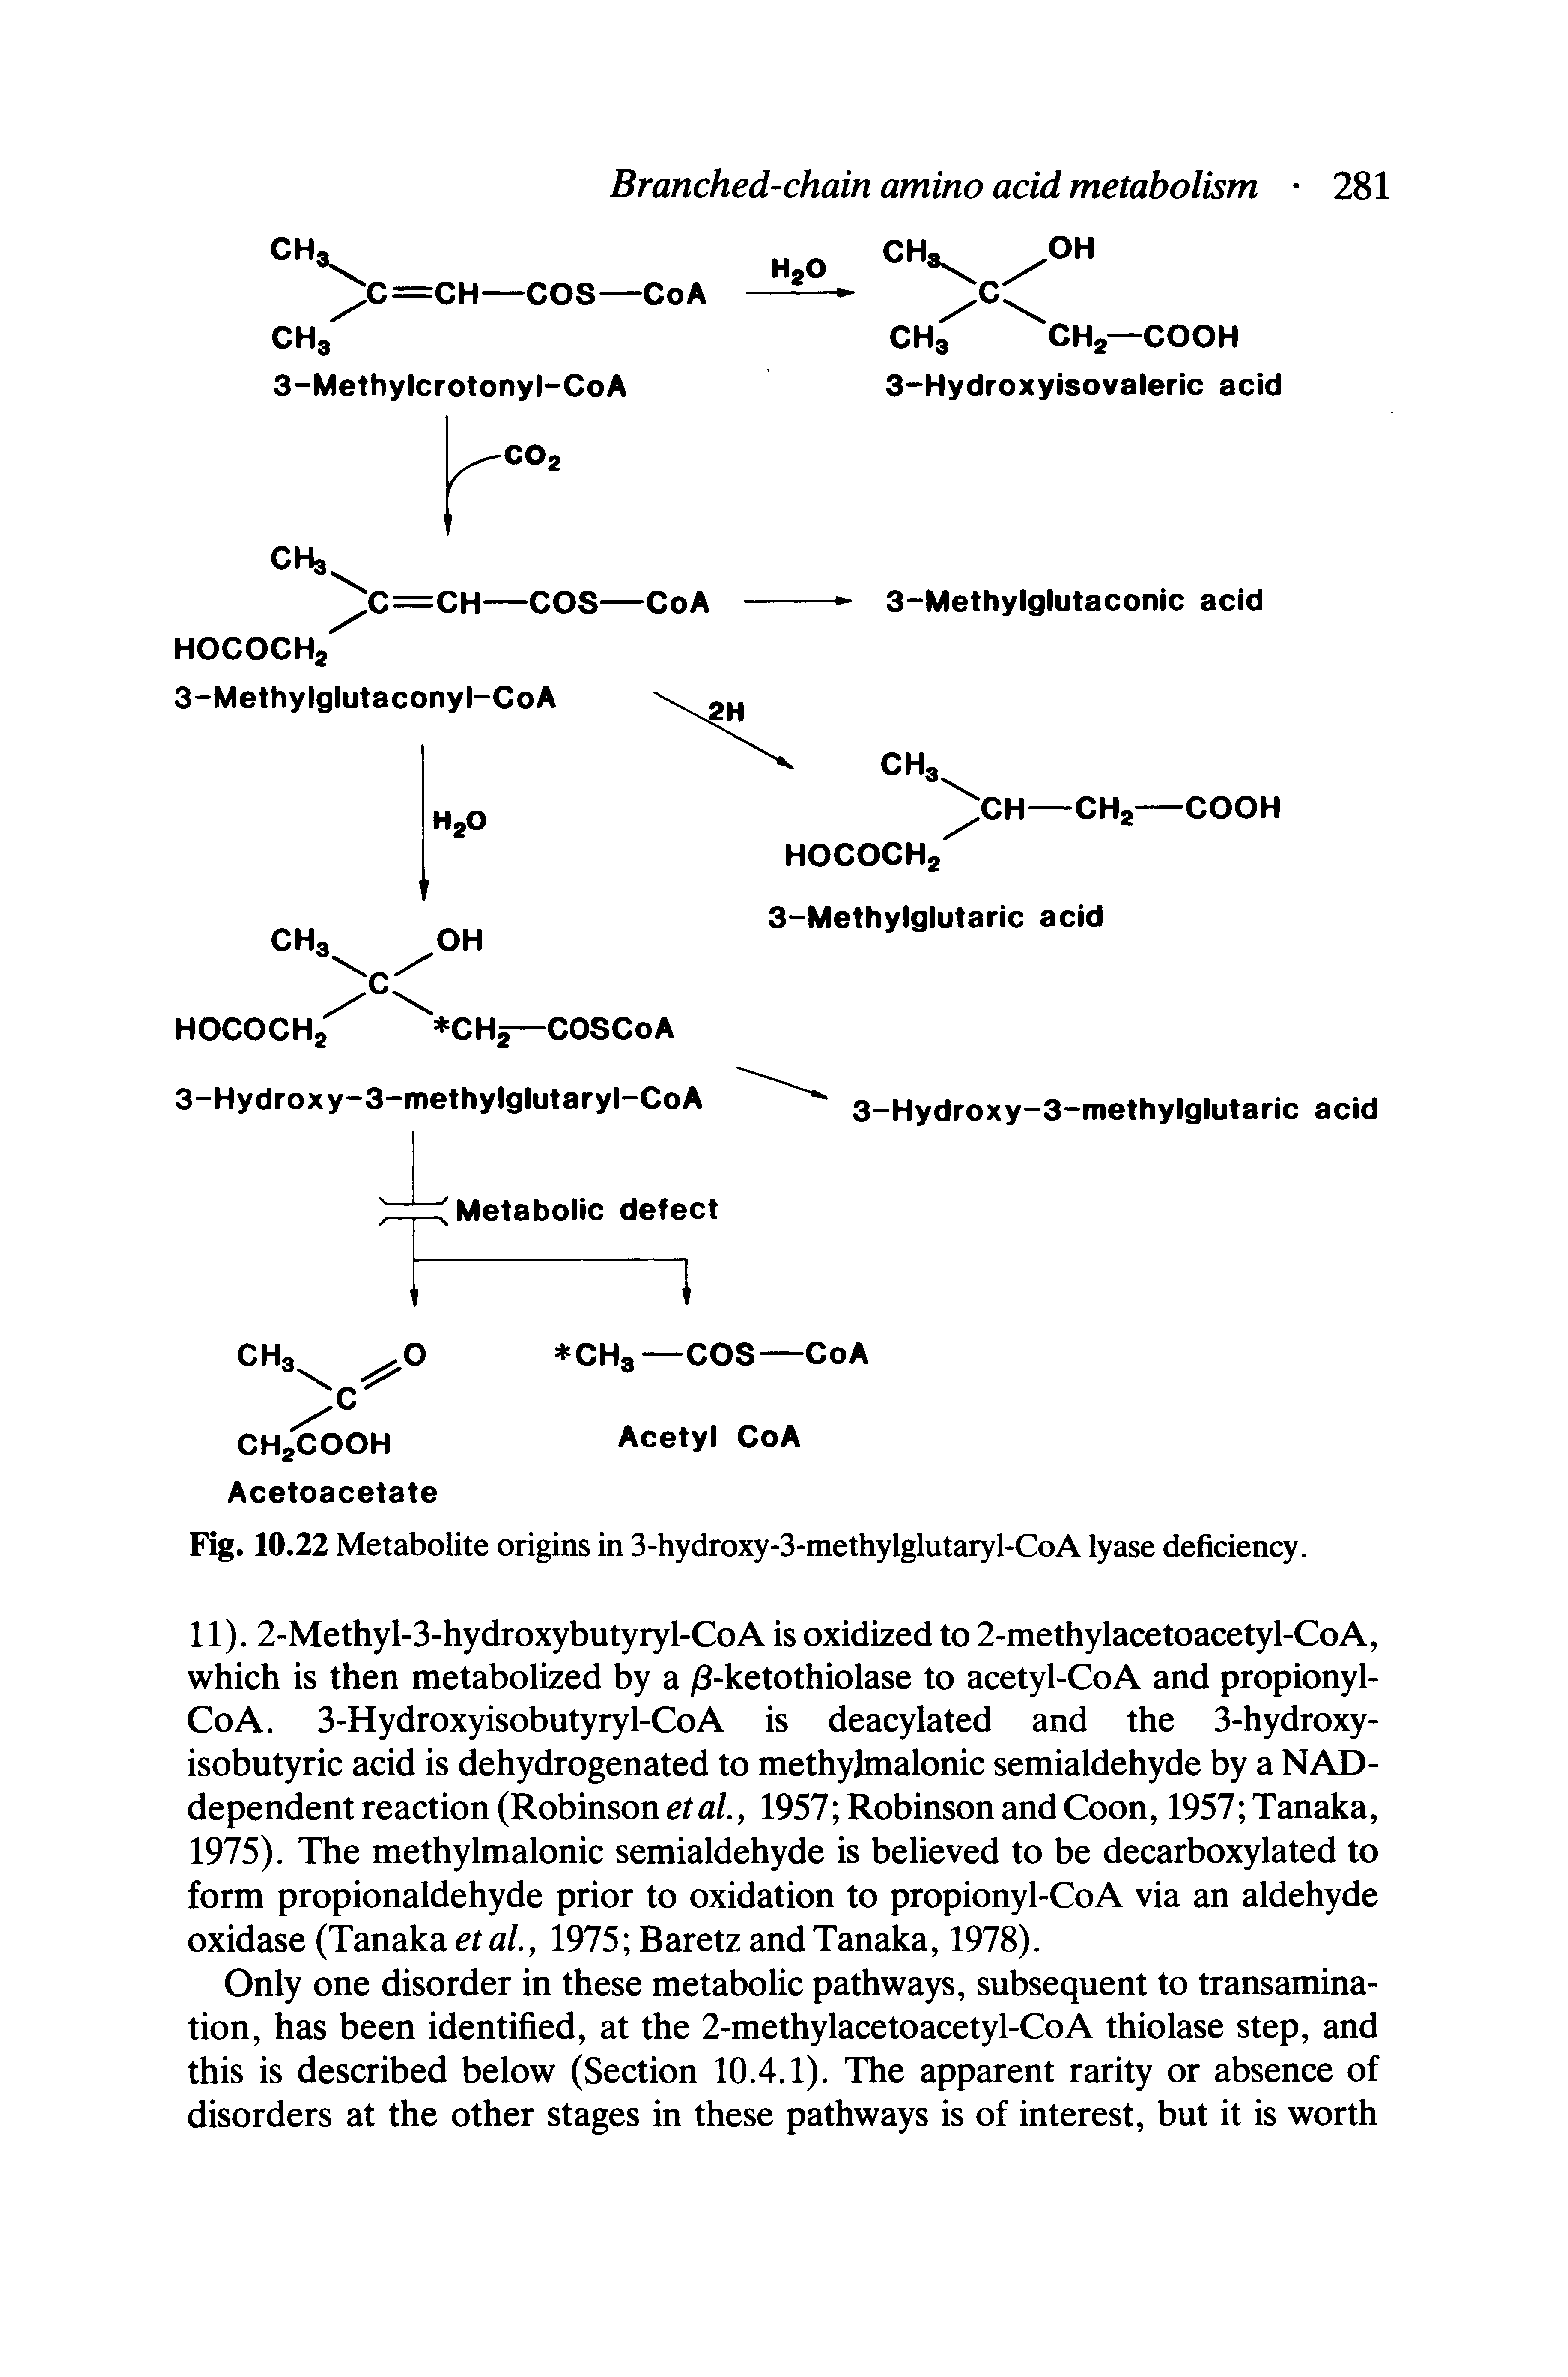 Fig. 10.22 Metabolite origins in 3-hydroxy-3-methylglutaryl-CoA lyase deficiency.